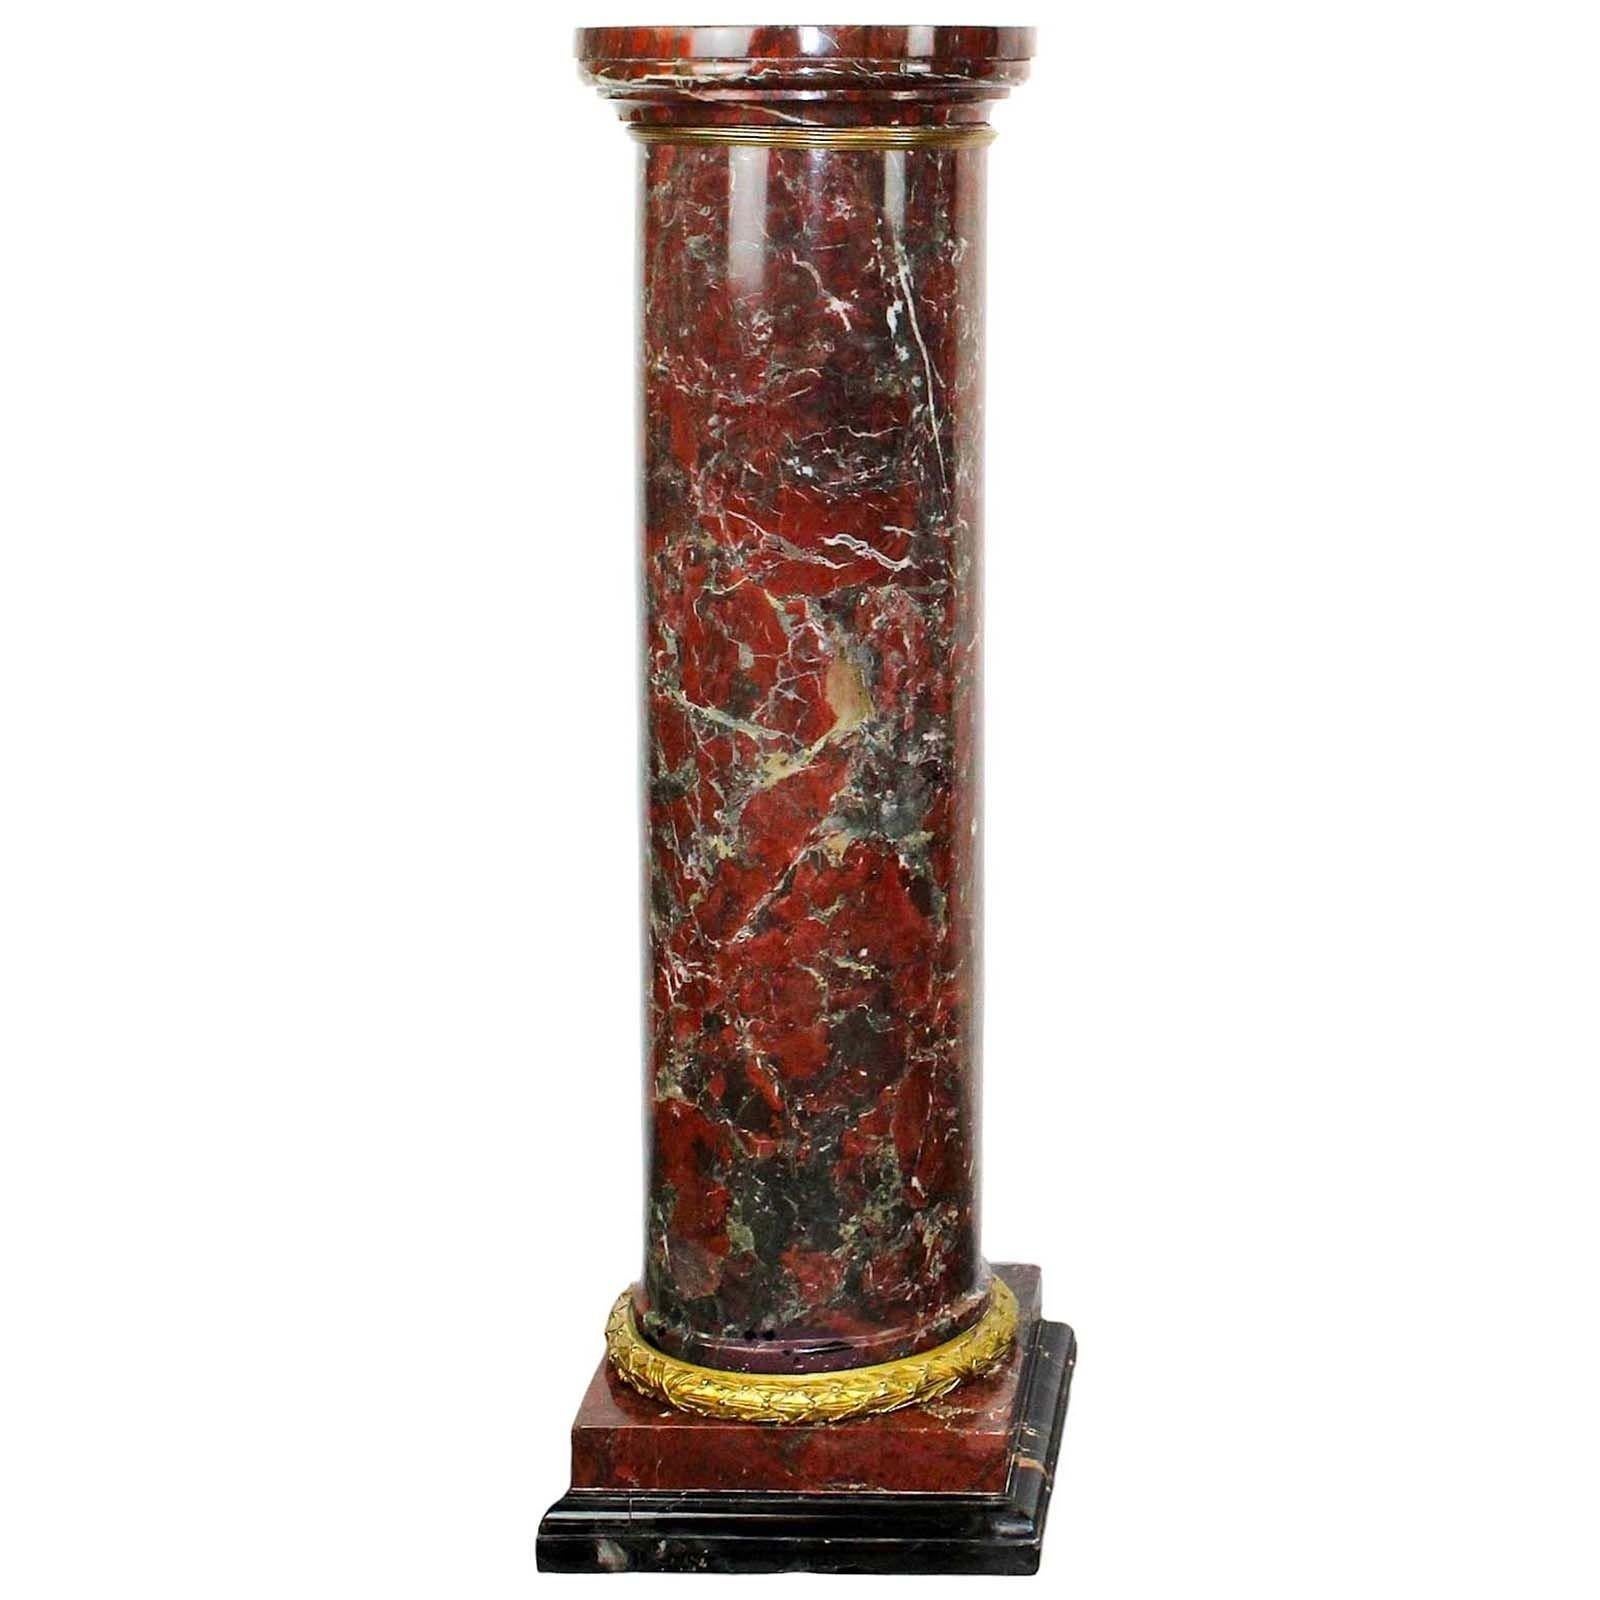 Diese französischen Louis-XVI-Säulen verkörpern zeitlose Eleganz. Sie sind aus exquisitem Rouge-Marmor gefertigt und ihre tiefroten Farbtöne werden durch aufwändige Verzierungen aus vergoldeter Bronze ergänzt. Das kannelierte Design und die